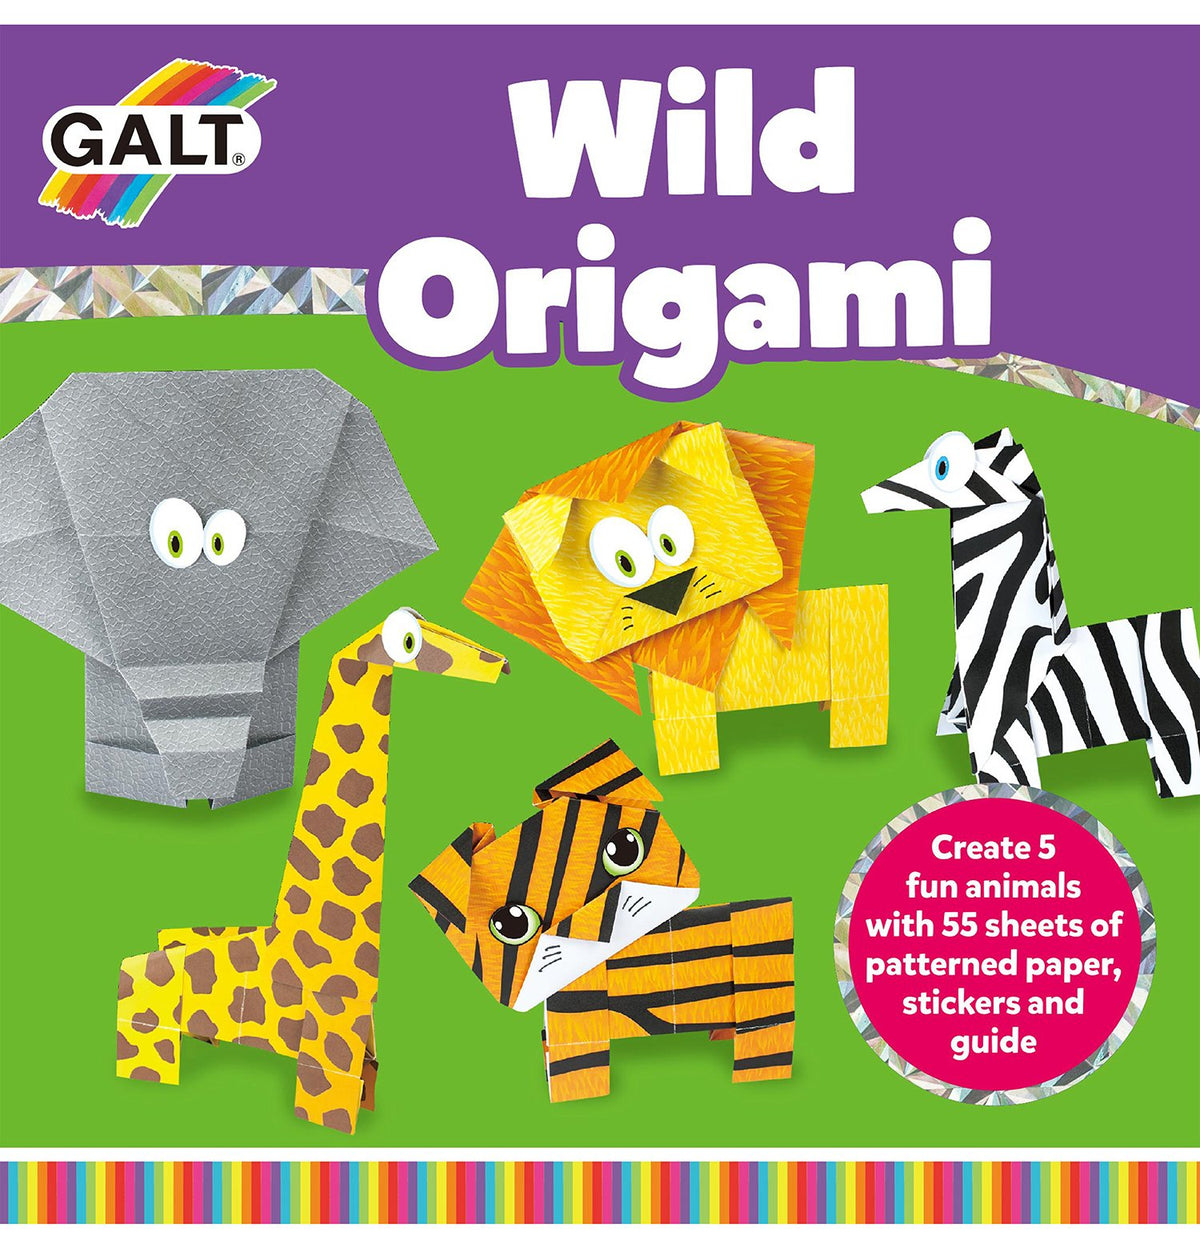 Wild Origami - Galt